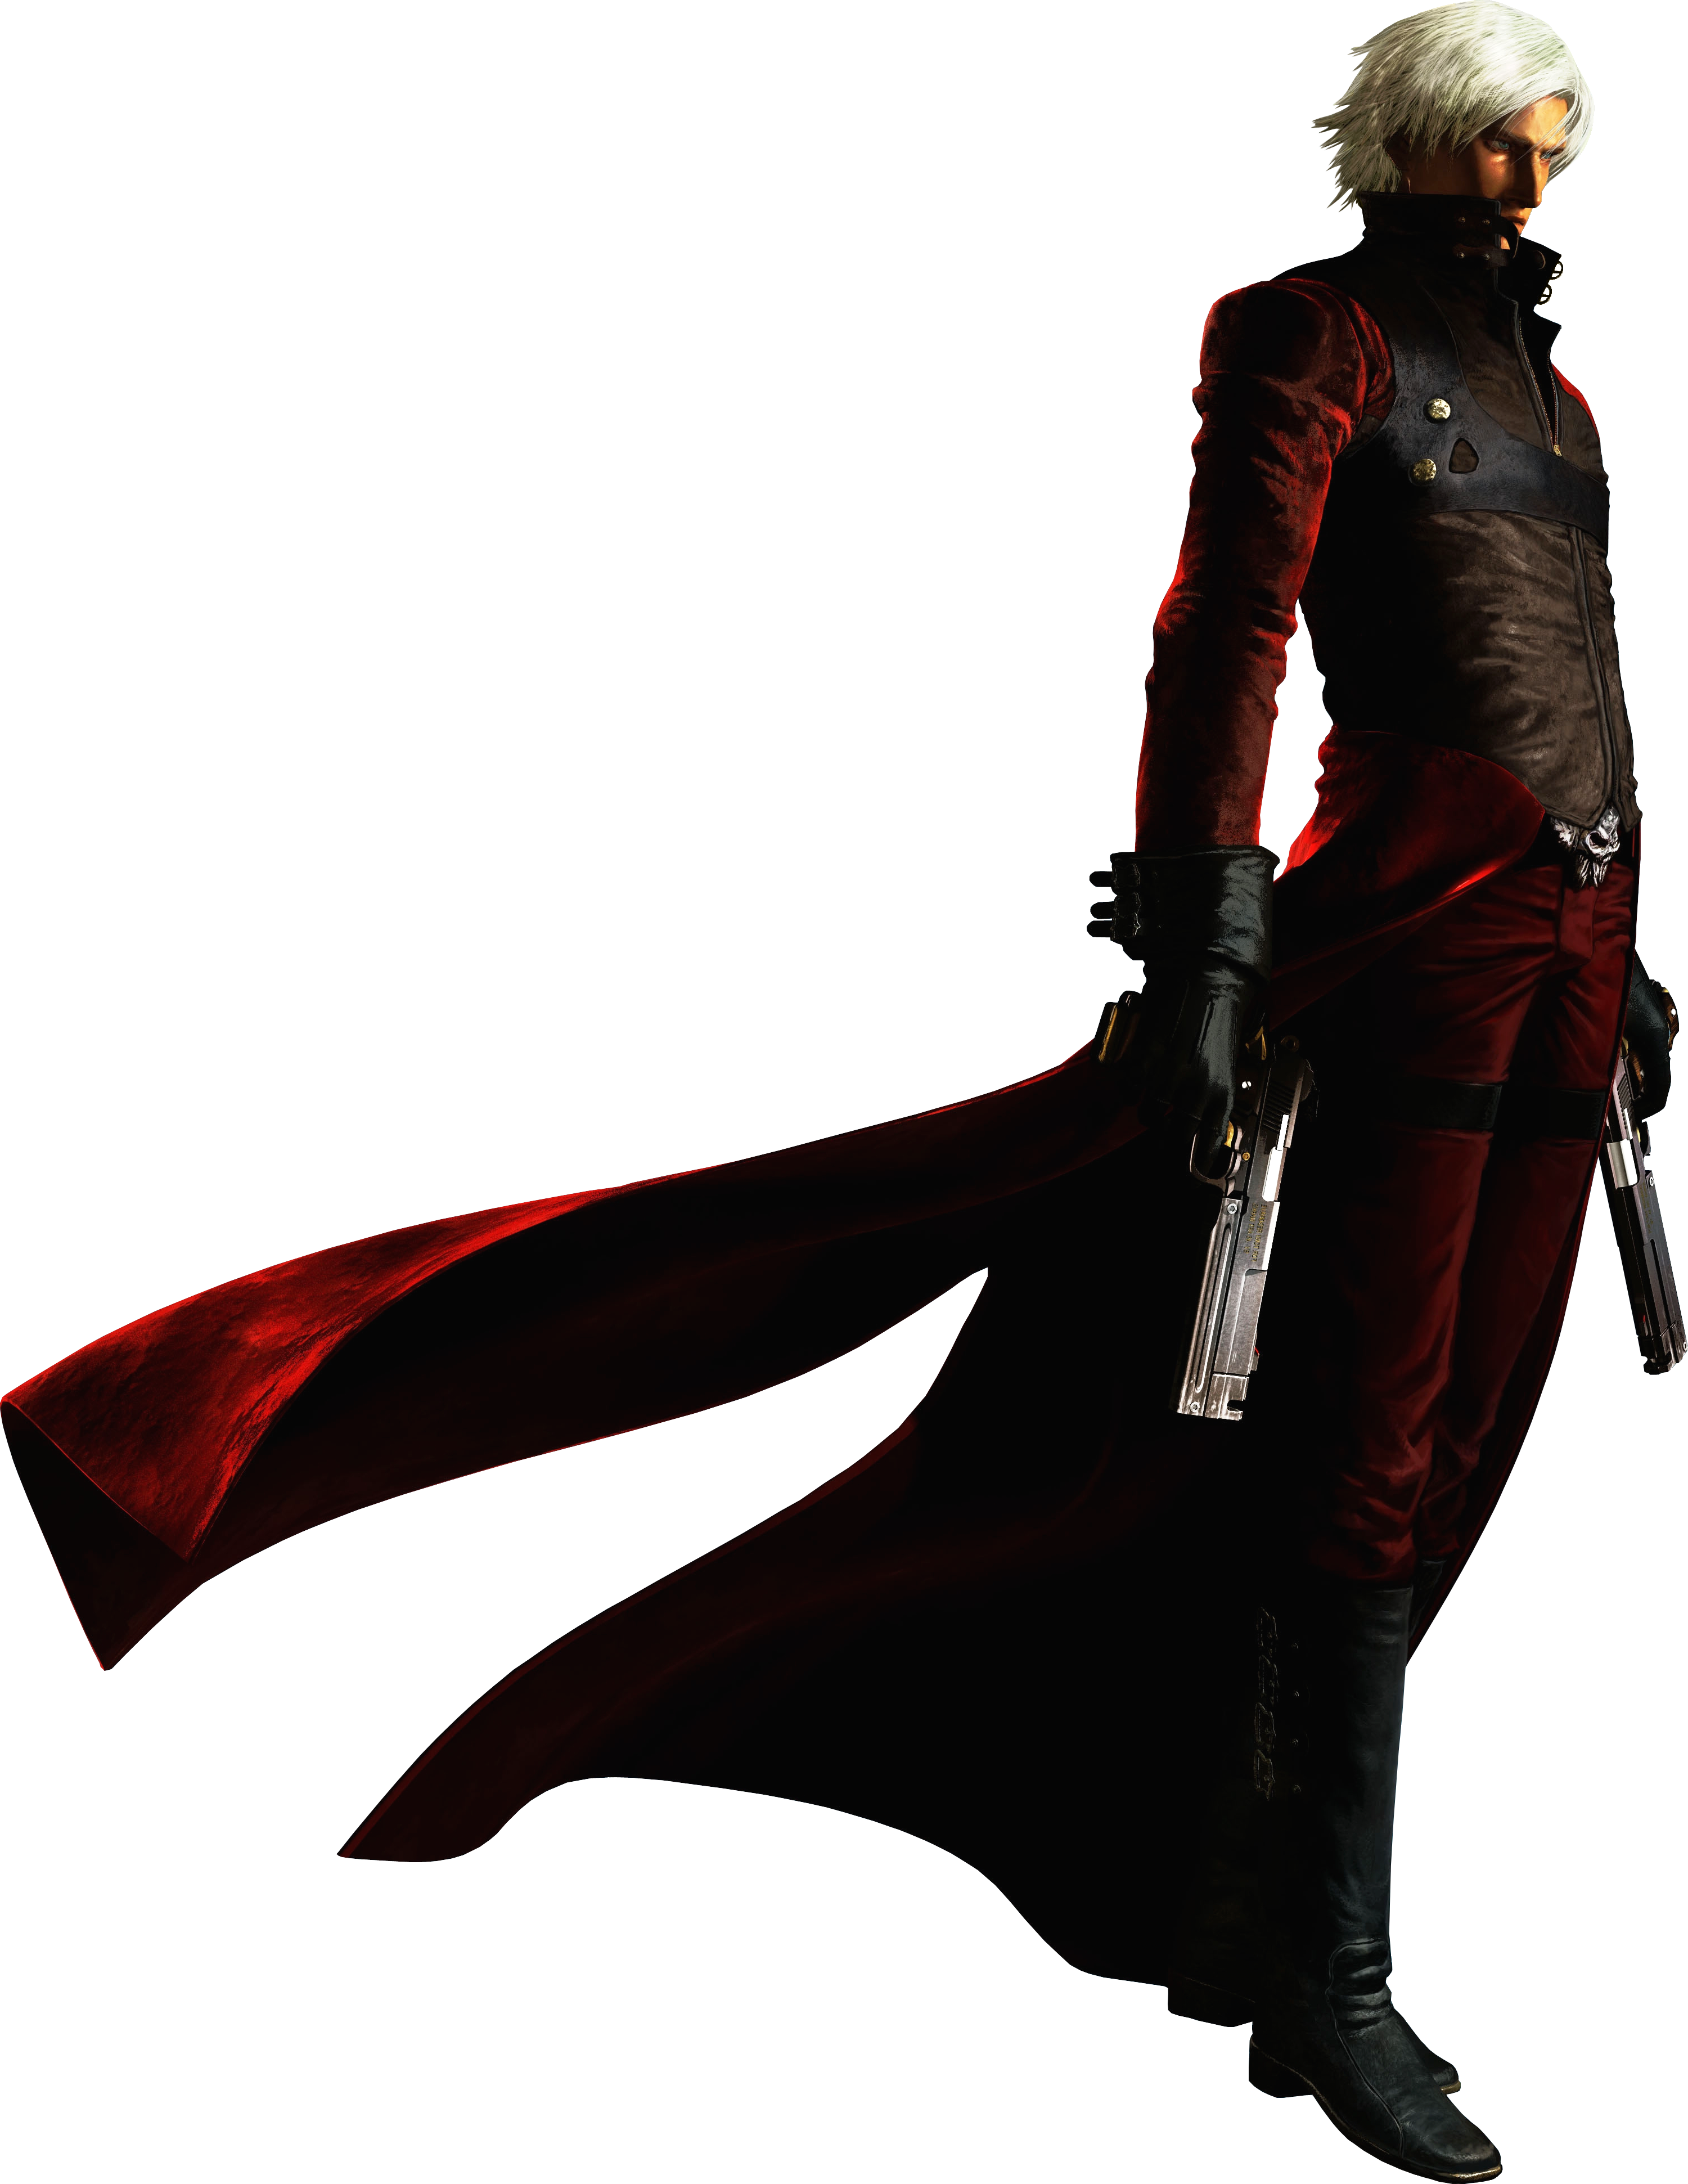 Dante Devil May Cry Wiki Fandom Nero e um dos cavaleiros da order of the sword, uma ordem religiosa que adora sparda. dante devil may cry wiki fandom